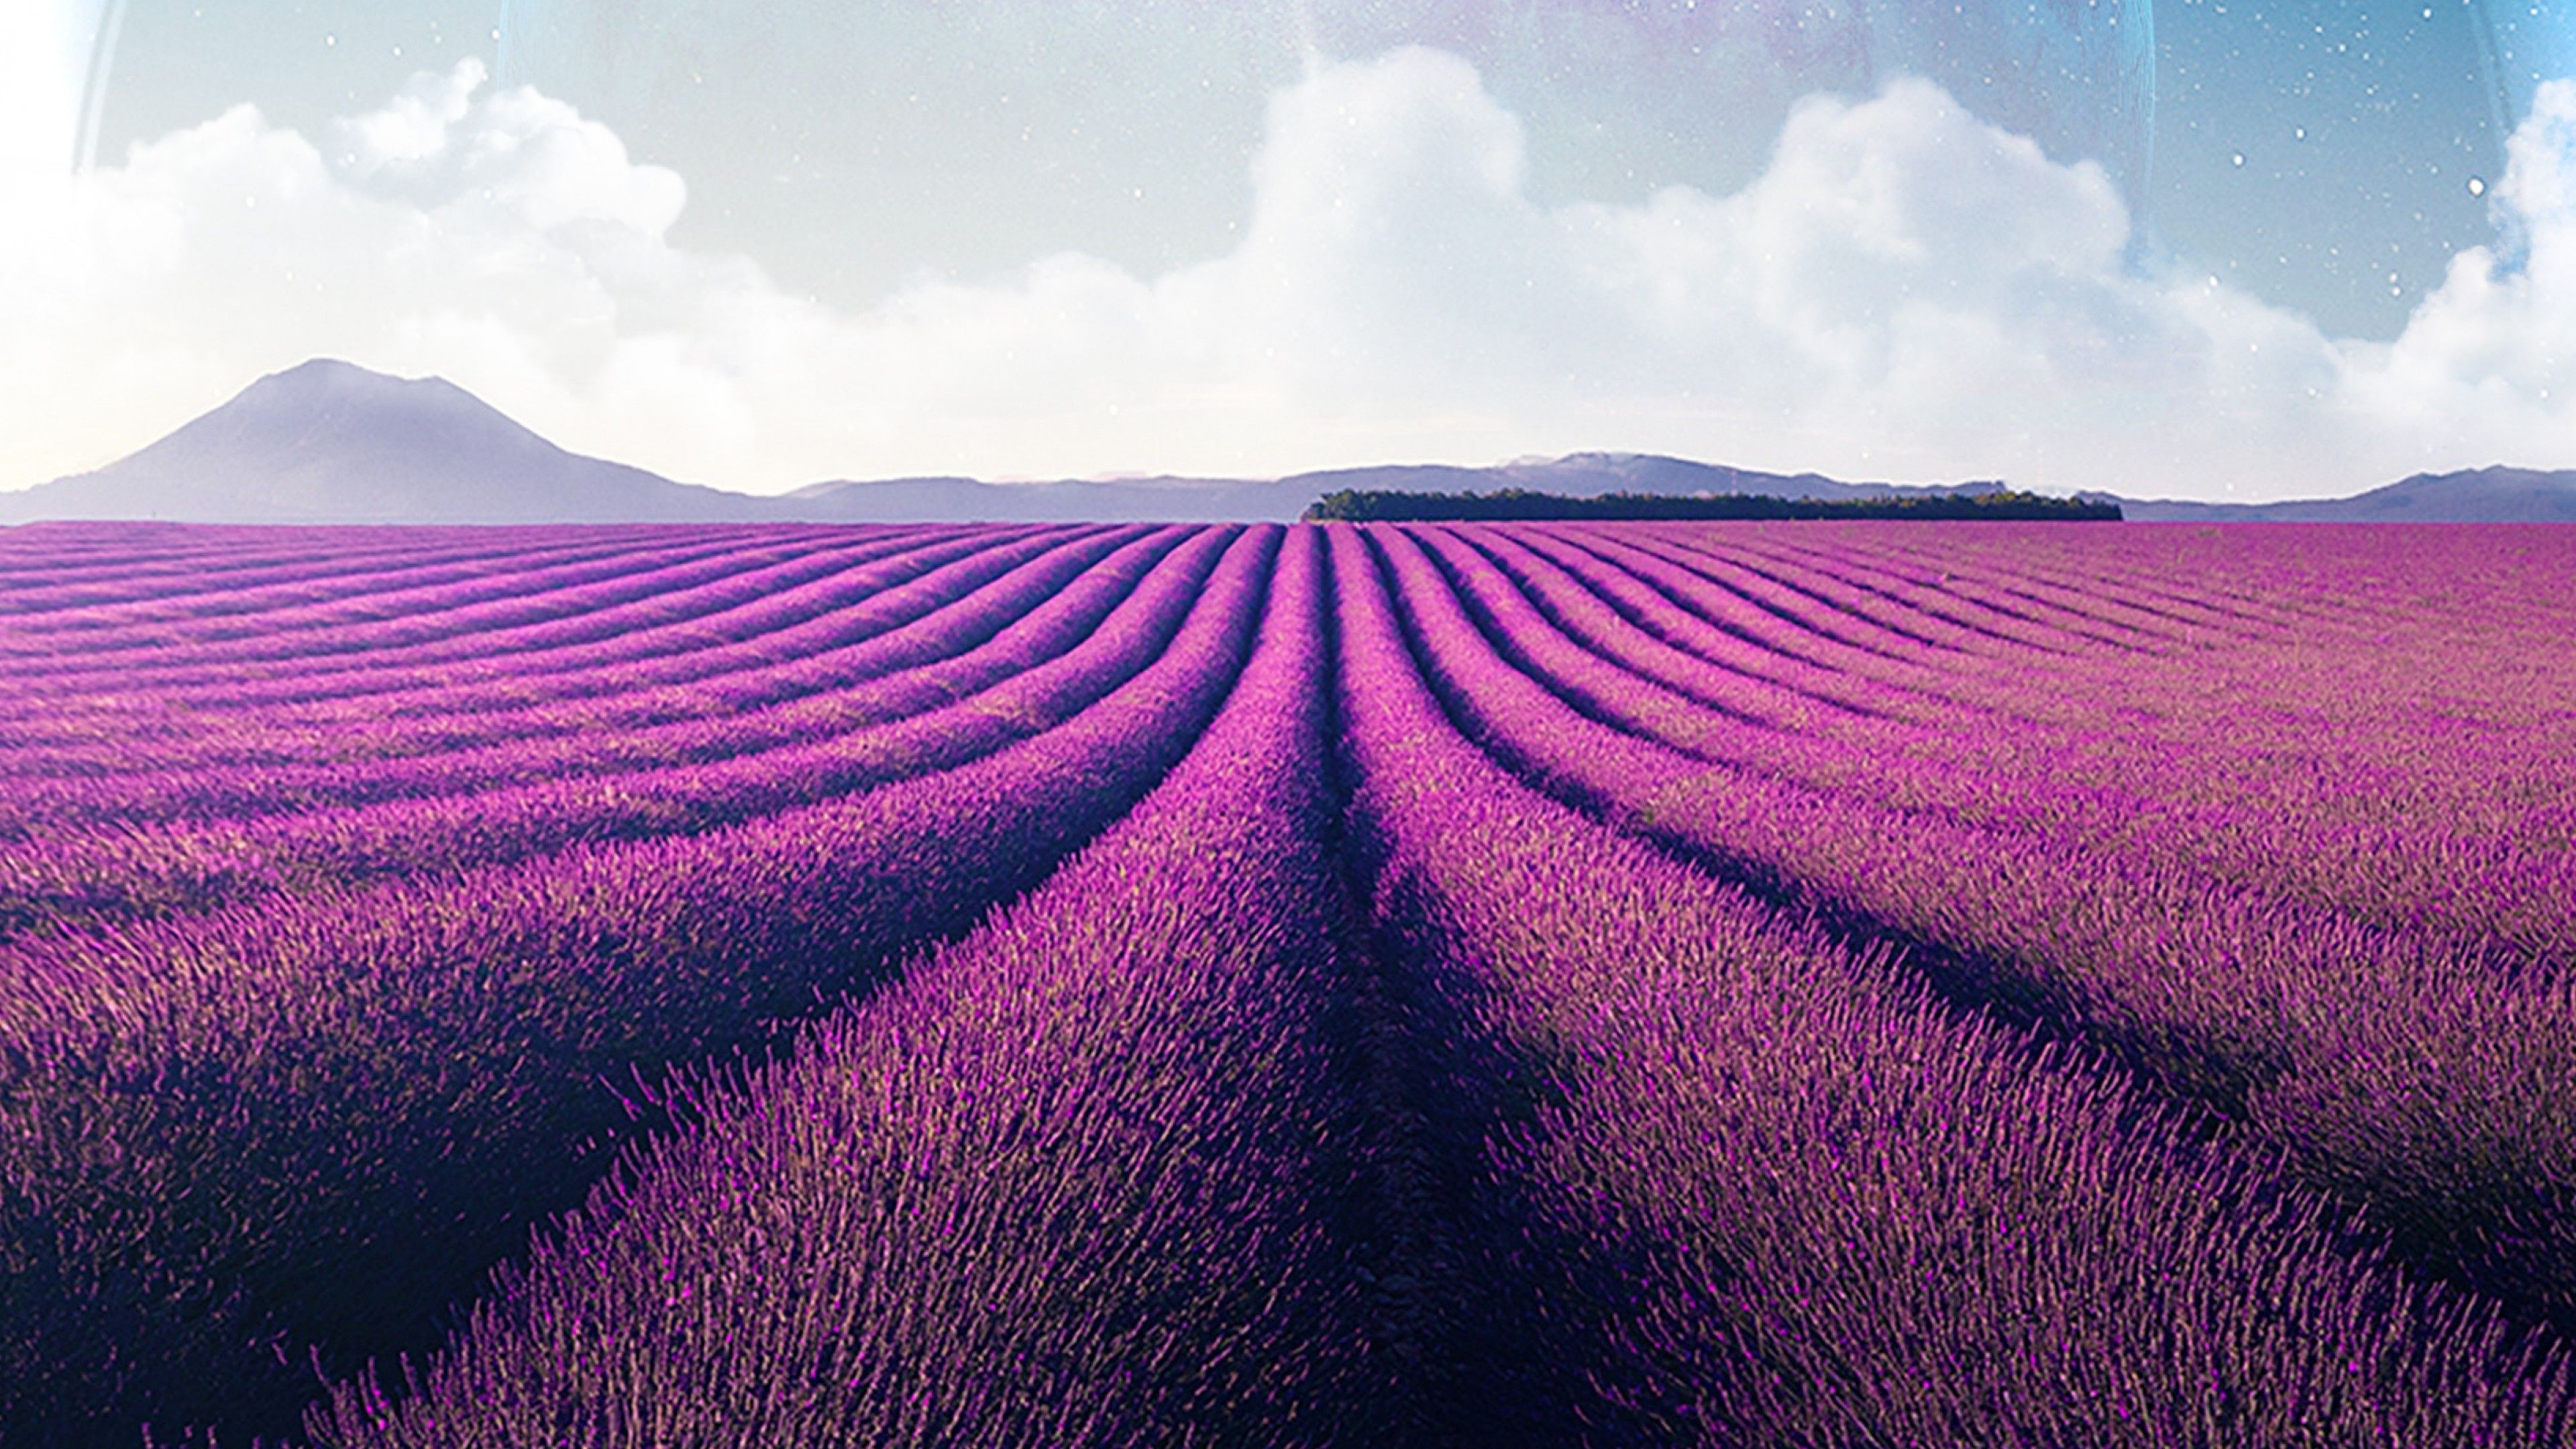 Lavender fields 4K Wallpaper, Lavender farm, Landscape, Planet, Surreal, Aesthetic, Nature